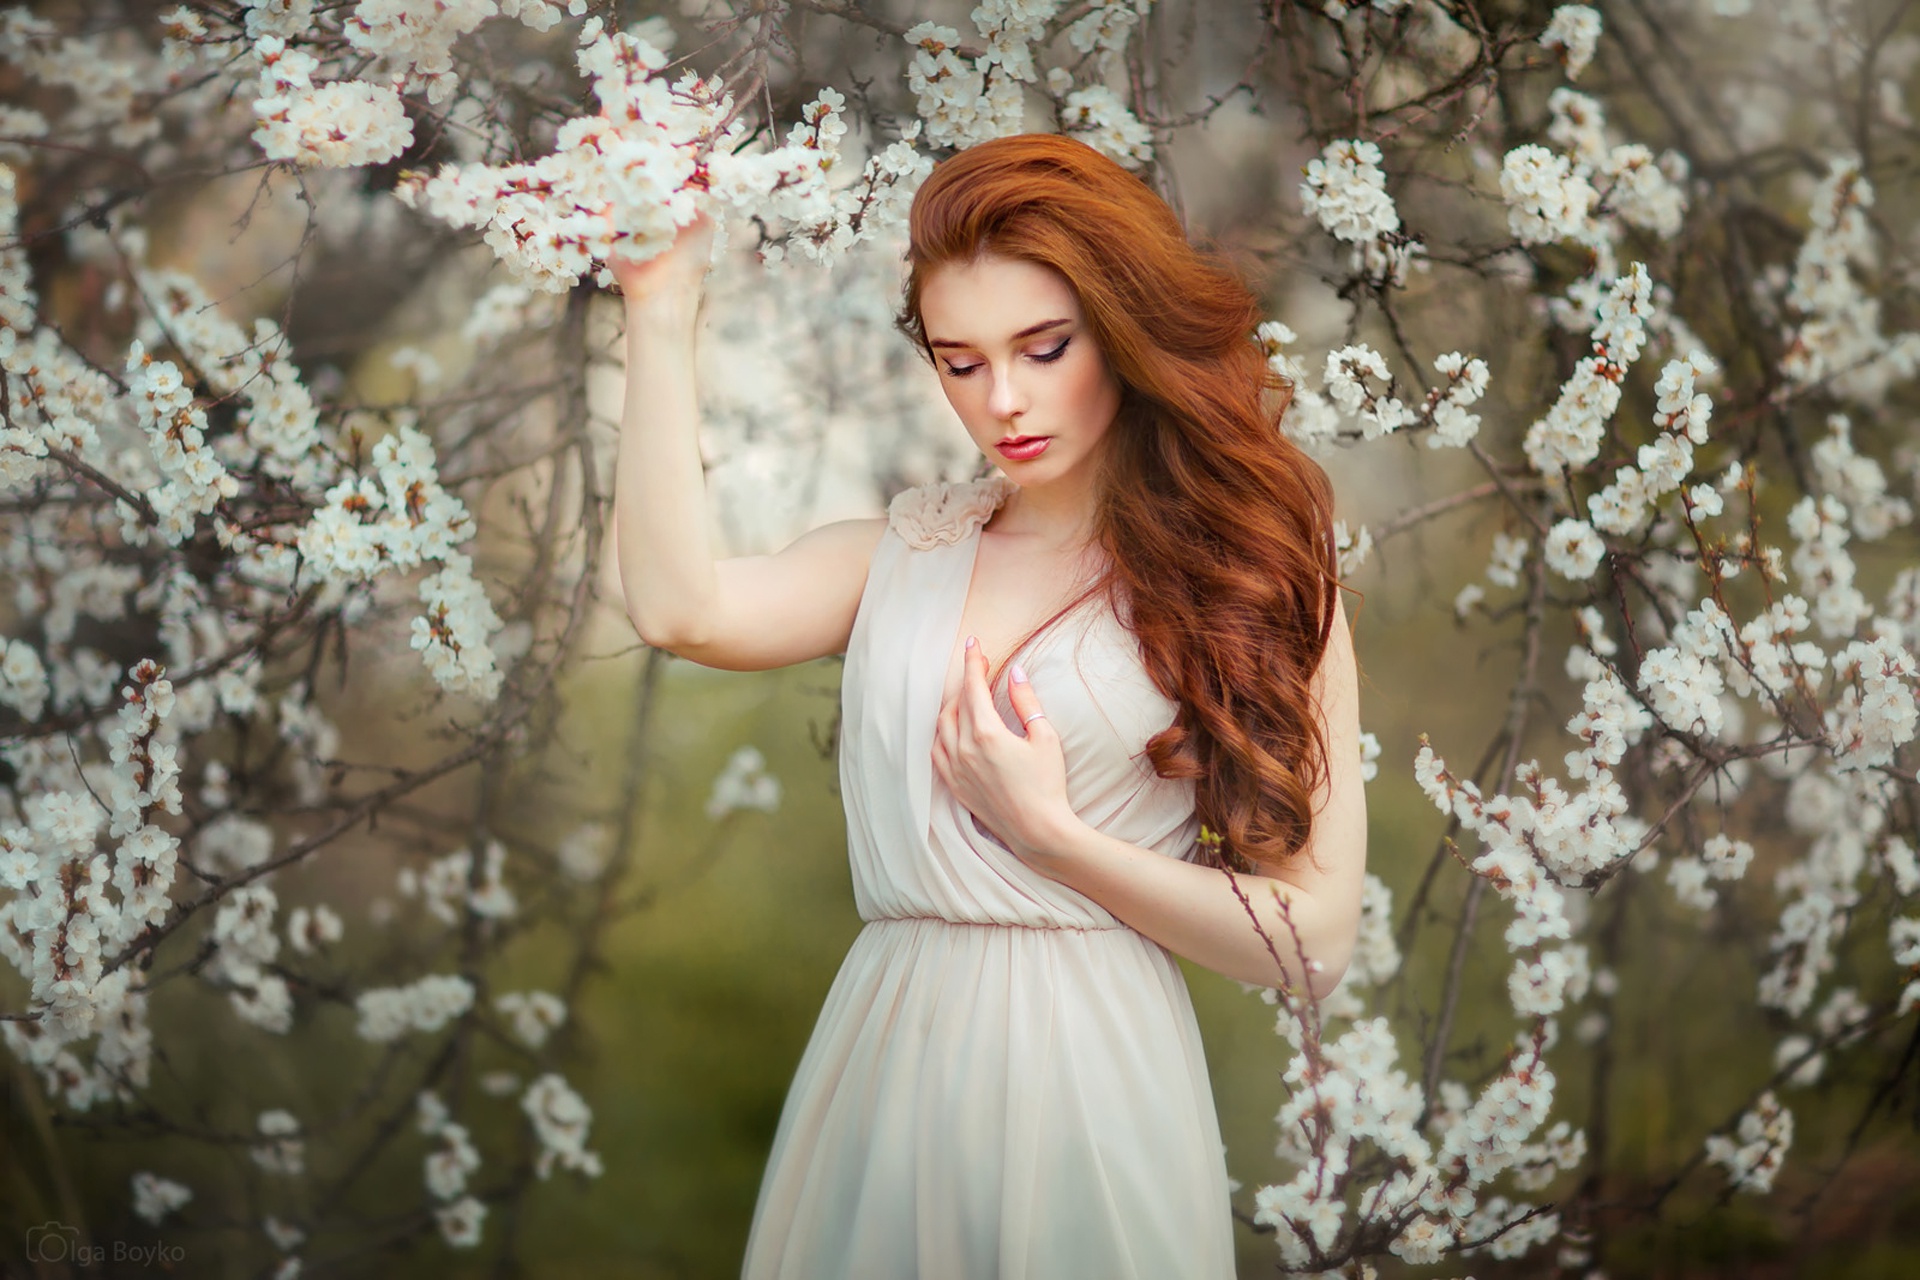 Blossom Long Hair Model Redhead White Dress White Flower 1920x1280